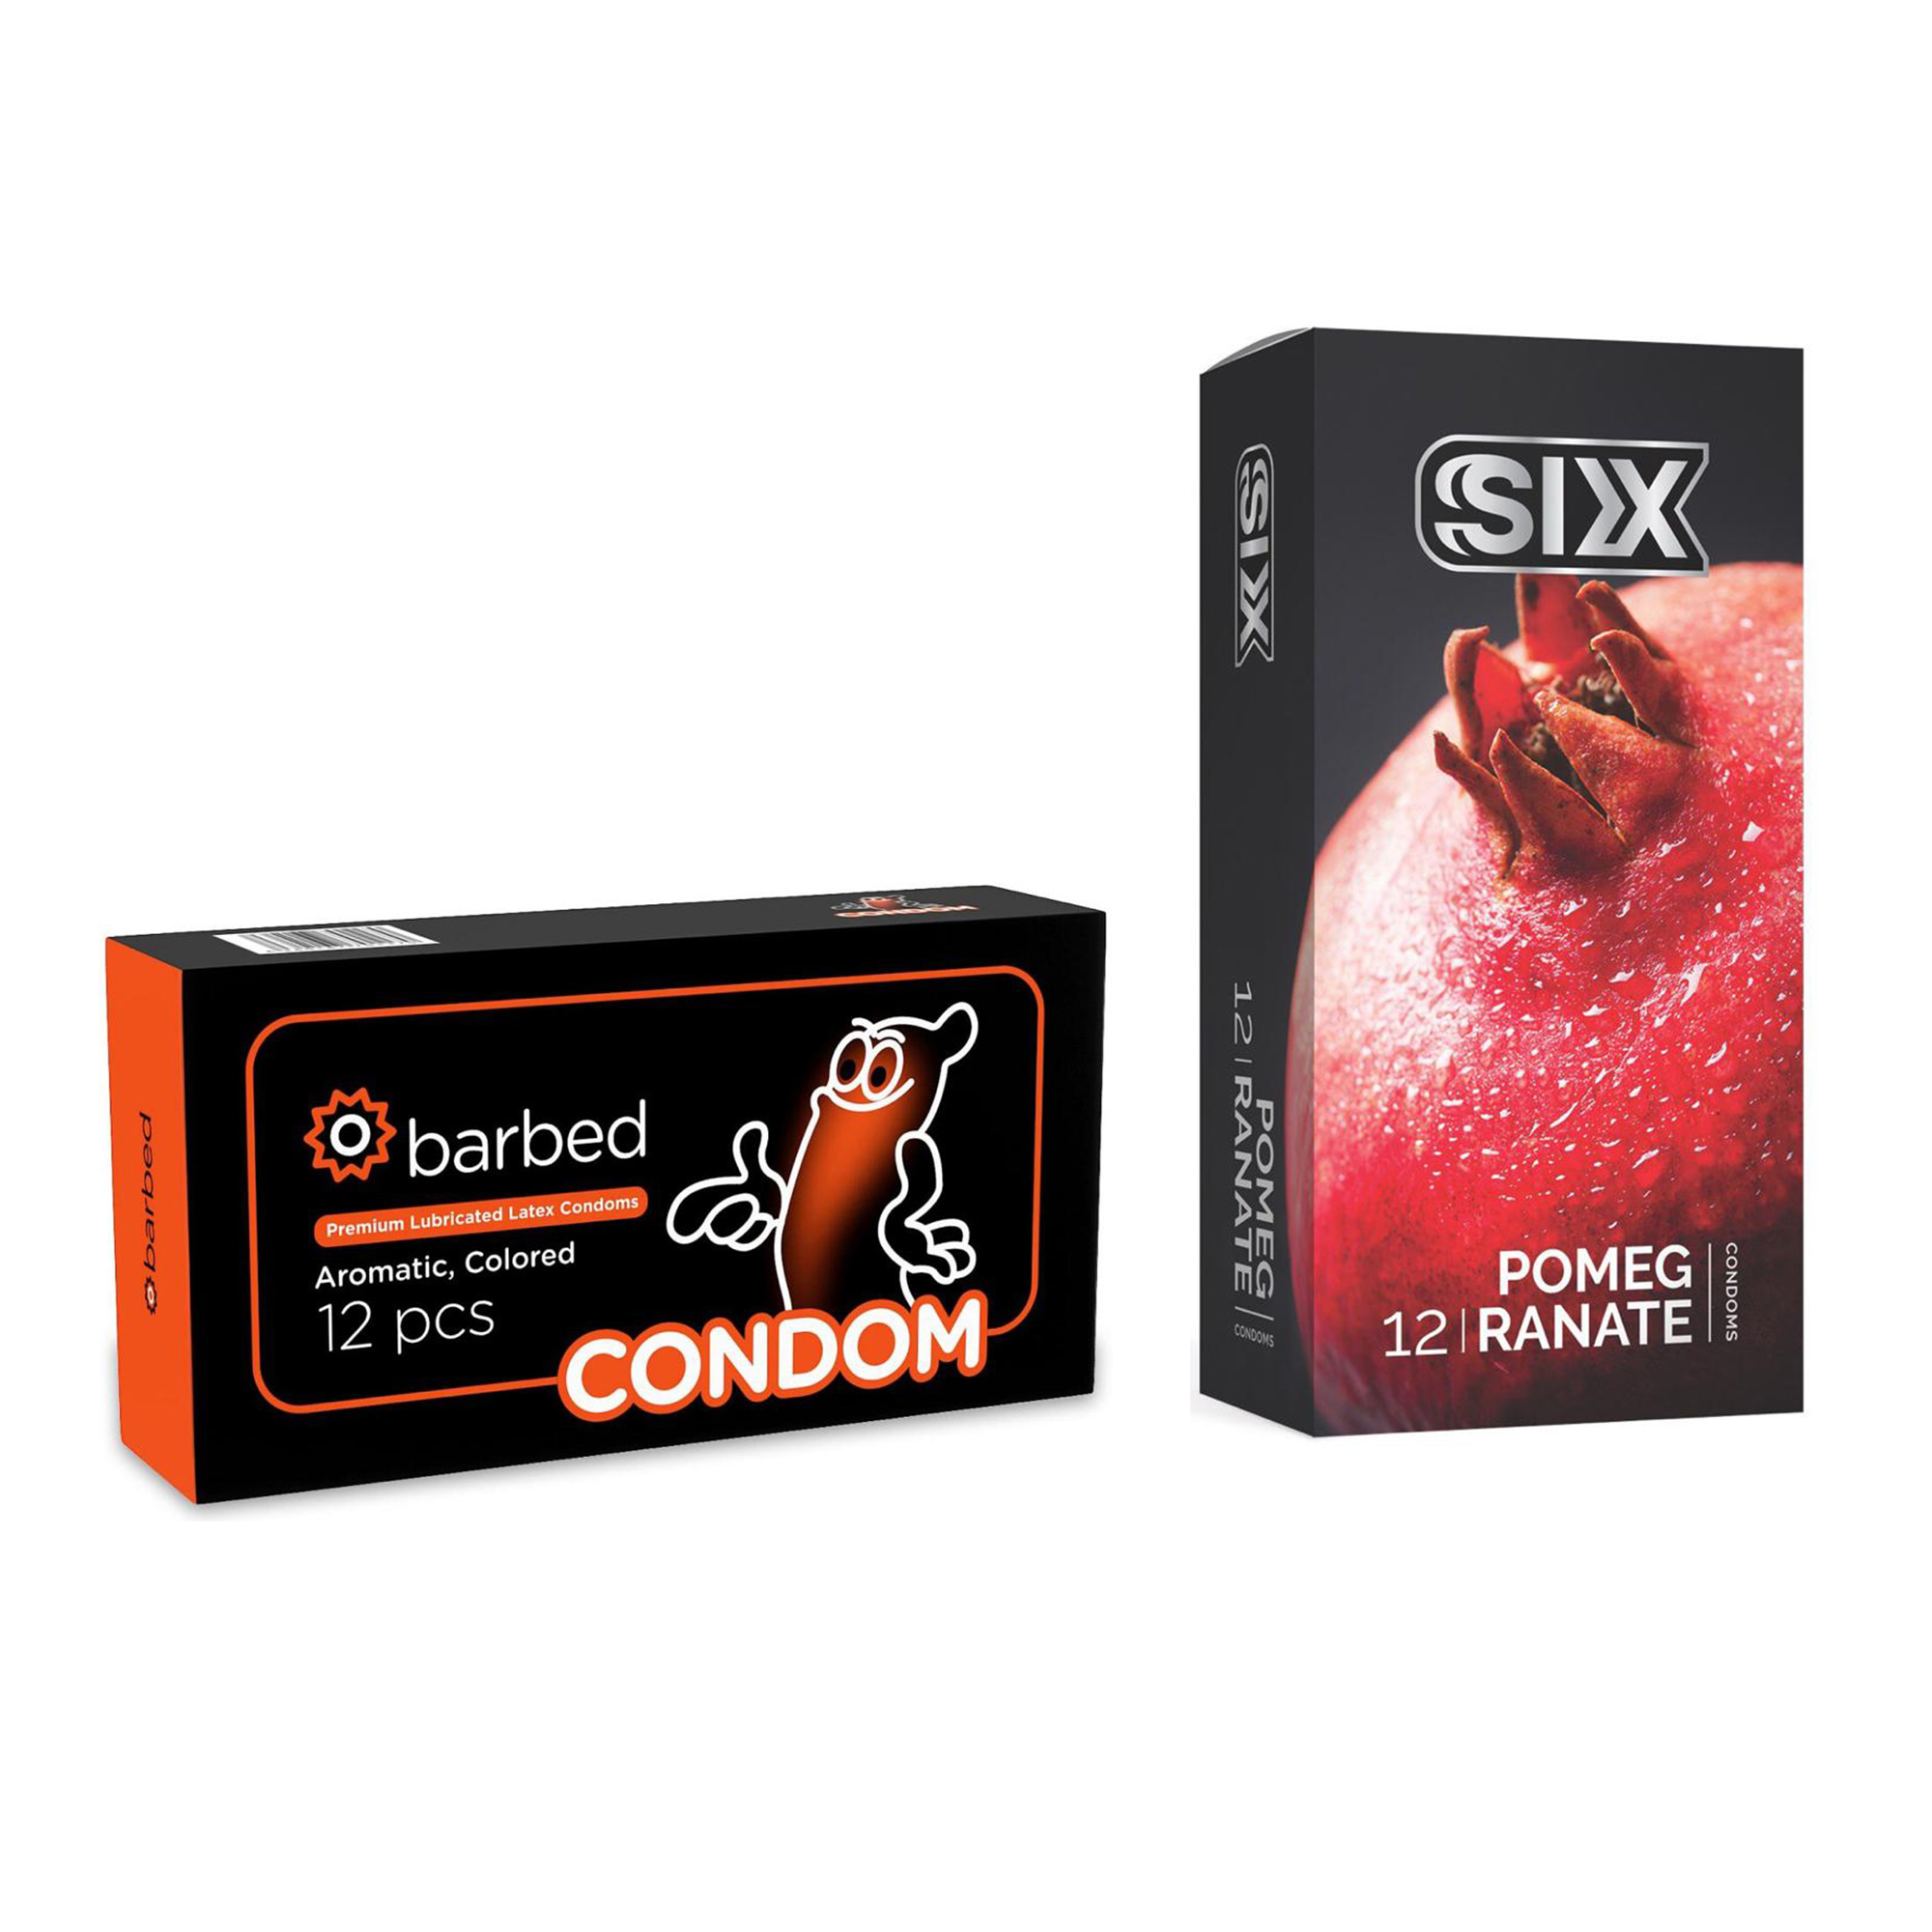 کاندوم سیکس مدل Pomegranate بسته 12 عددی به همراه کاندوم کاندوم مدل Barbed بسته 12 عددی